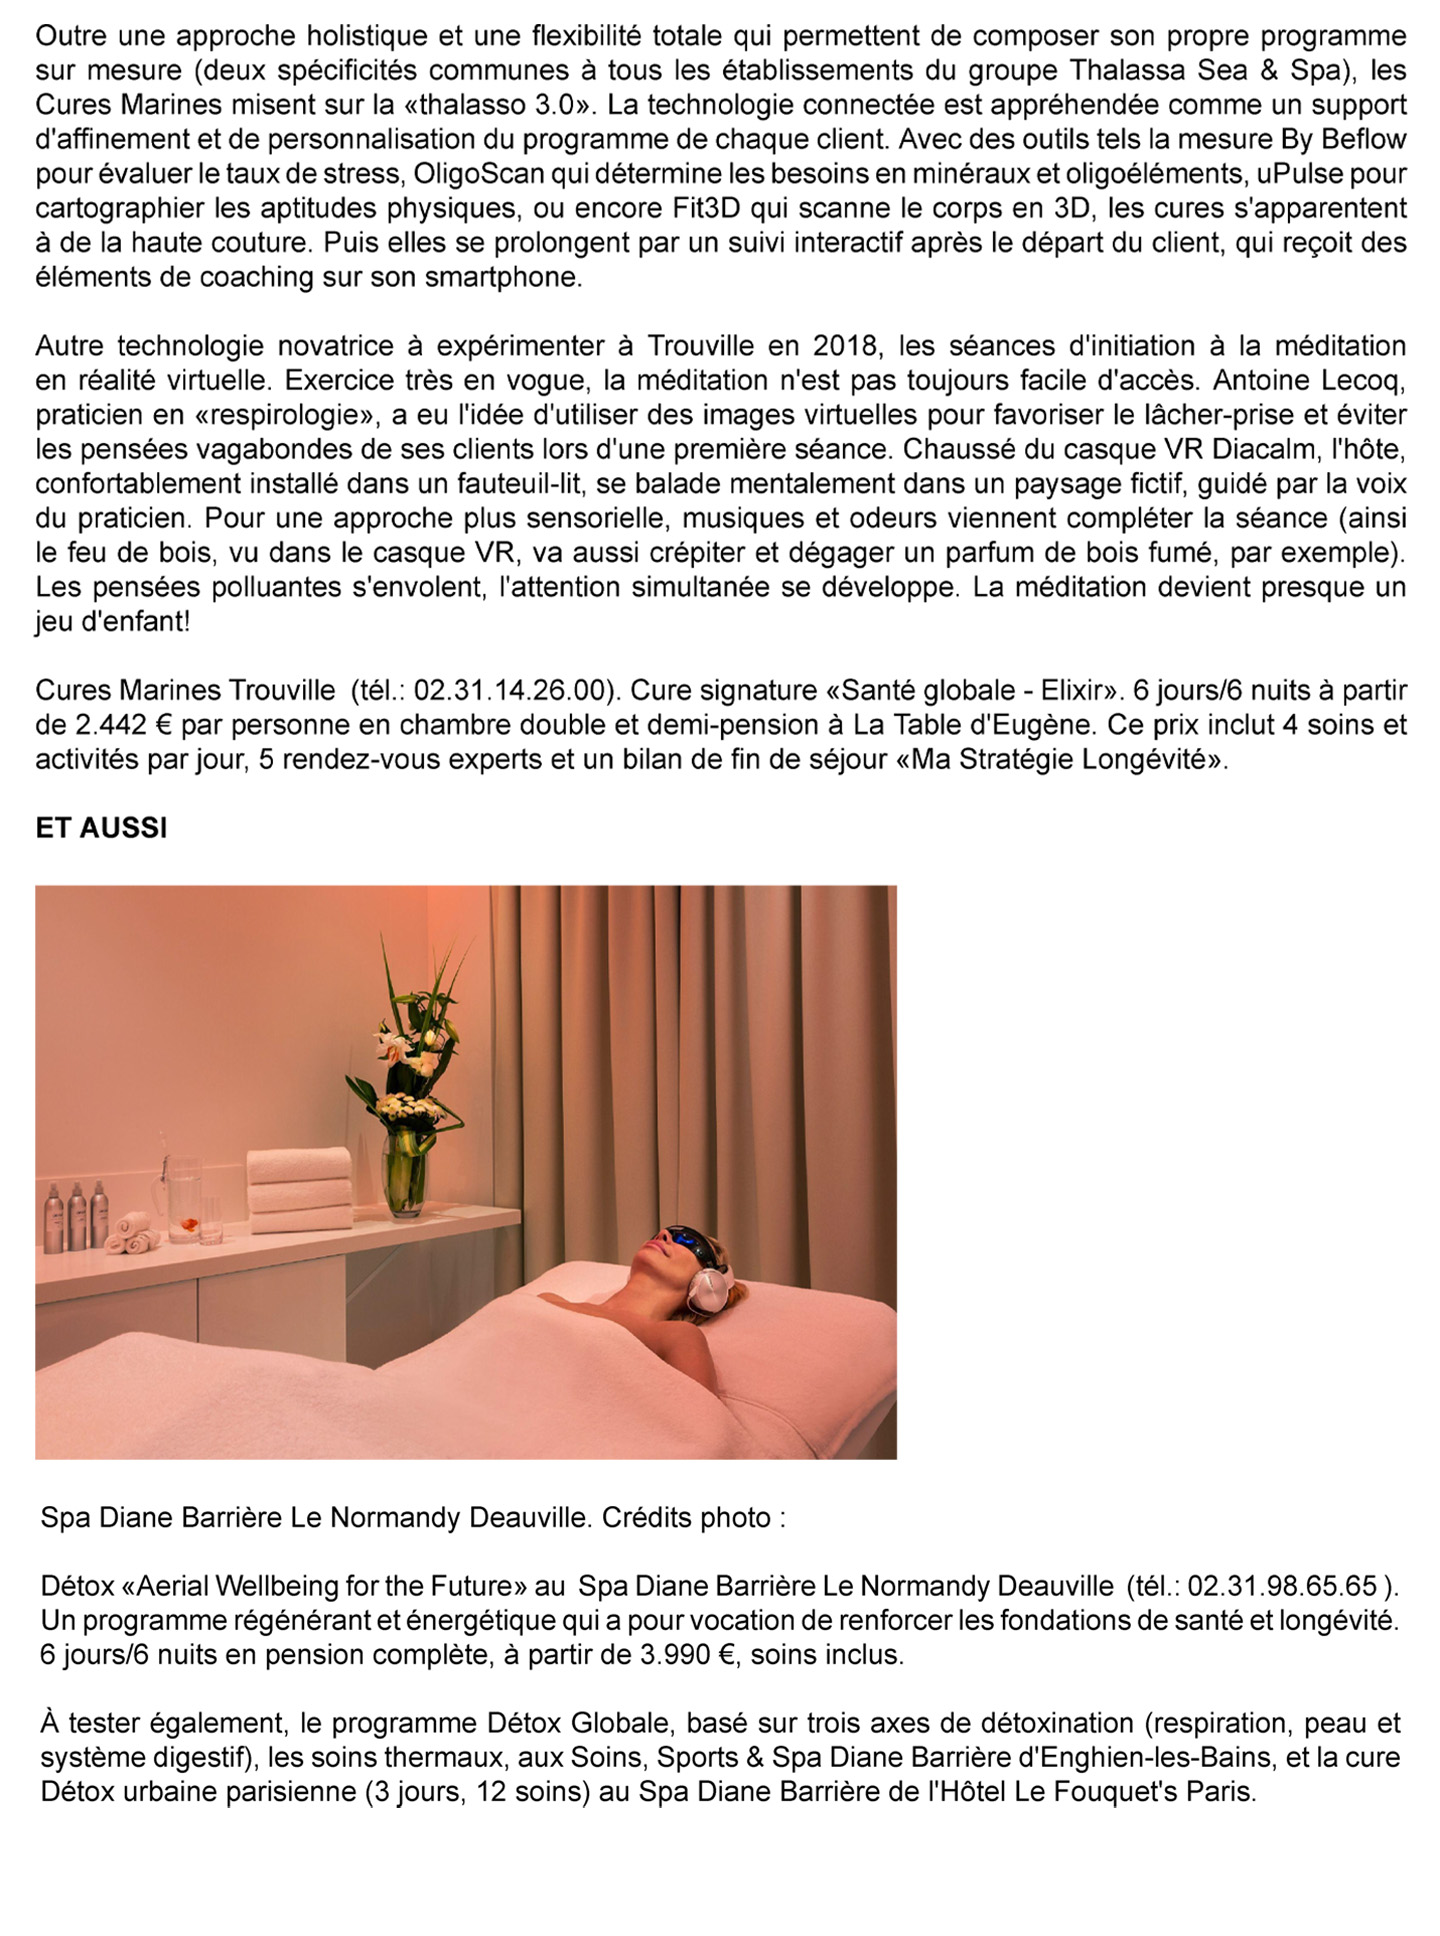 Article sur les cures marines de Trouville réalisées par le studio jean-Philippe Nuel dans le magazine Le Figaro, nouvel hotel spa thalasso de luxe, architecture d'intérieur de luxe, monument historique